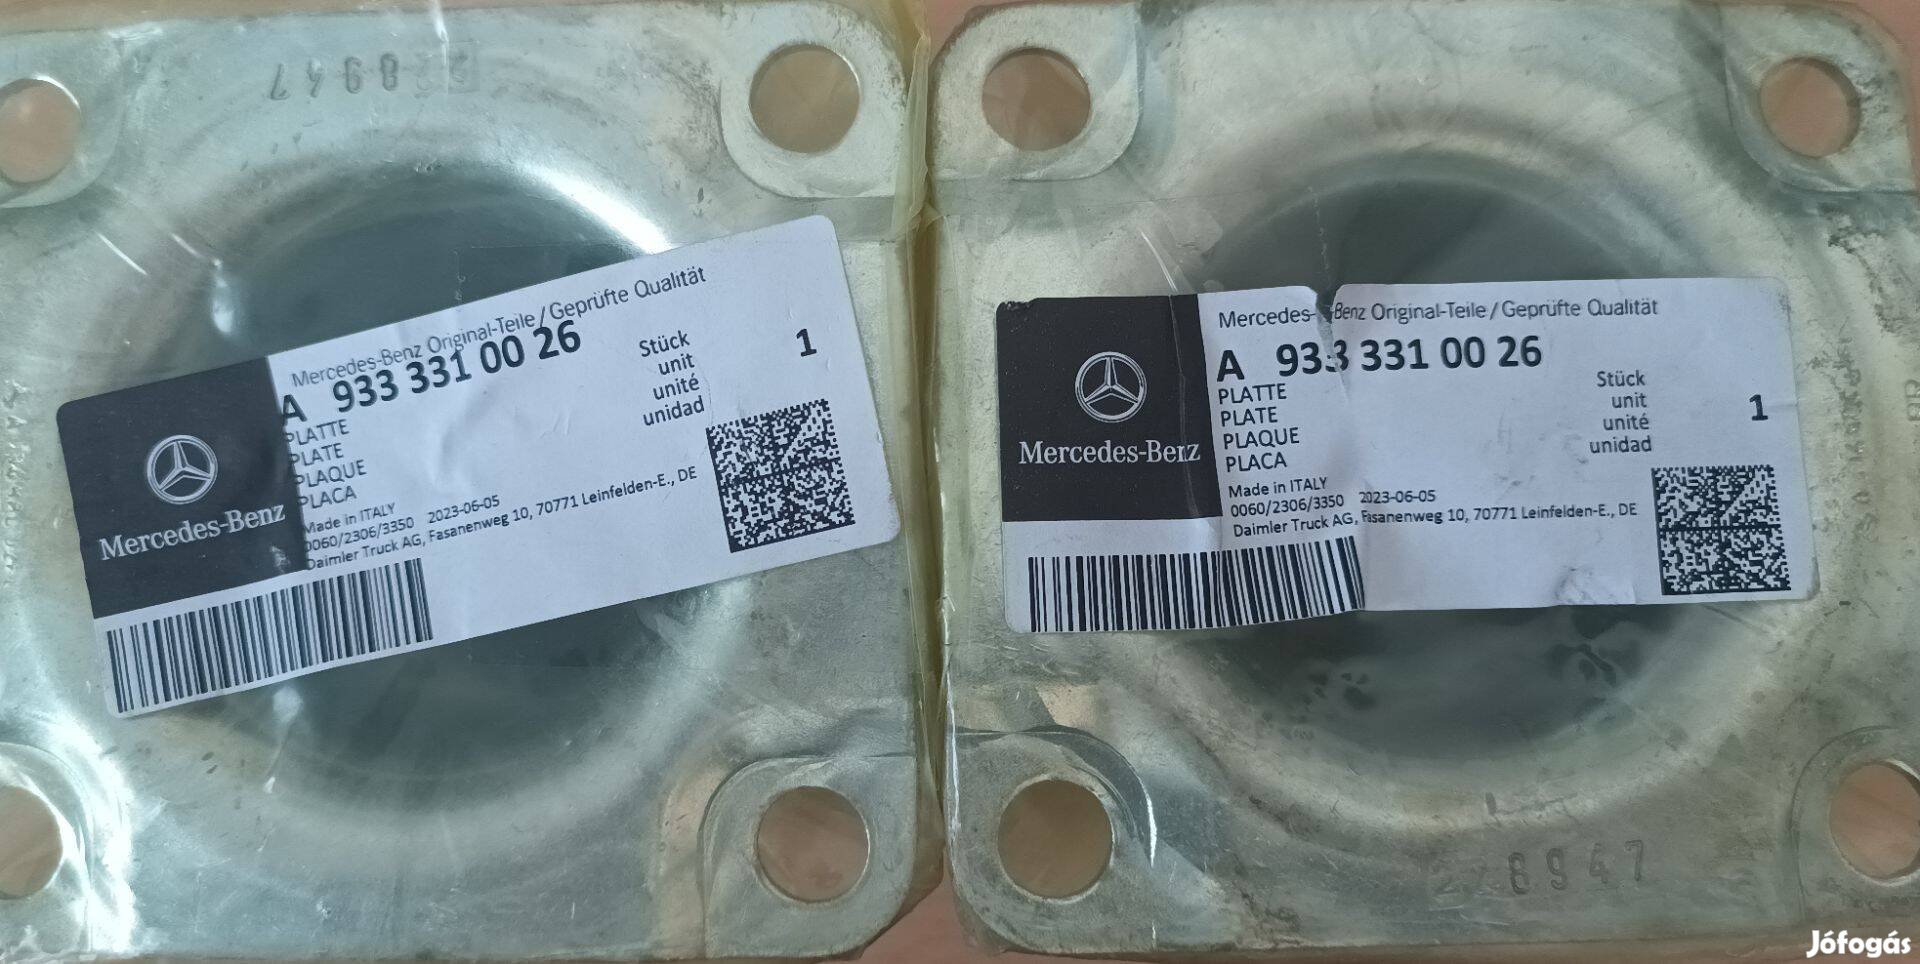 Mercedes-Benz A933 331 00 26 szett (2 db)